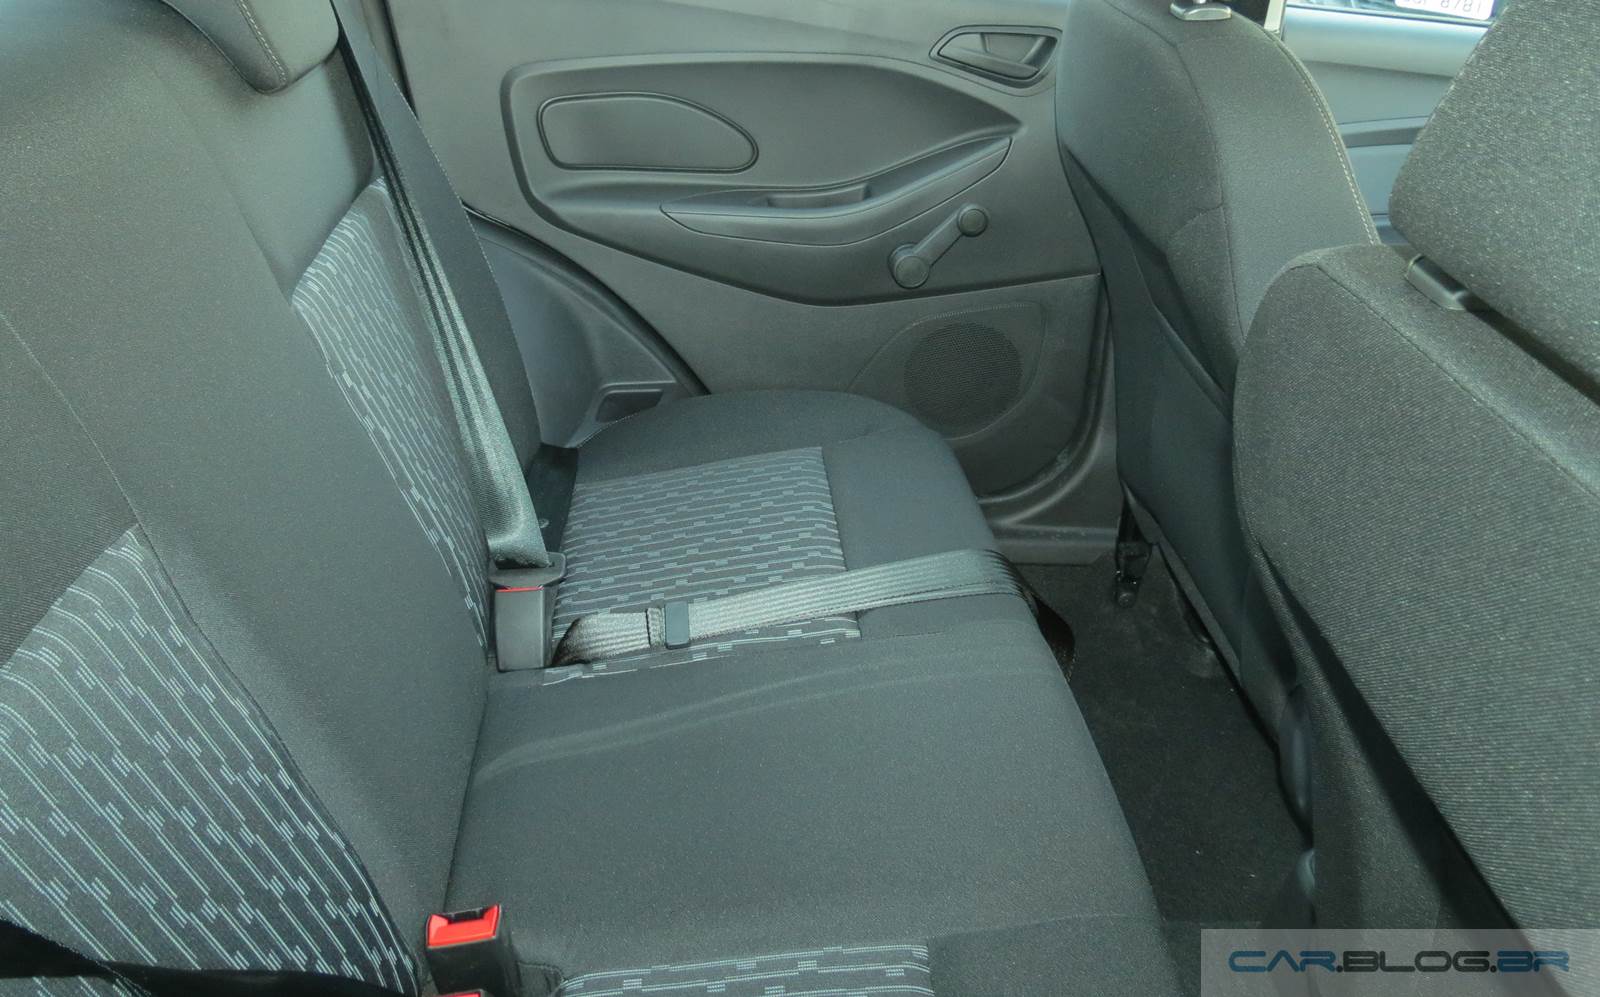 Ford Ka SE 1.0 2016 - interior - espaço traseiro